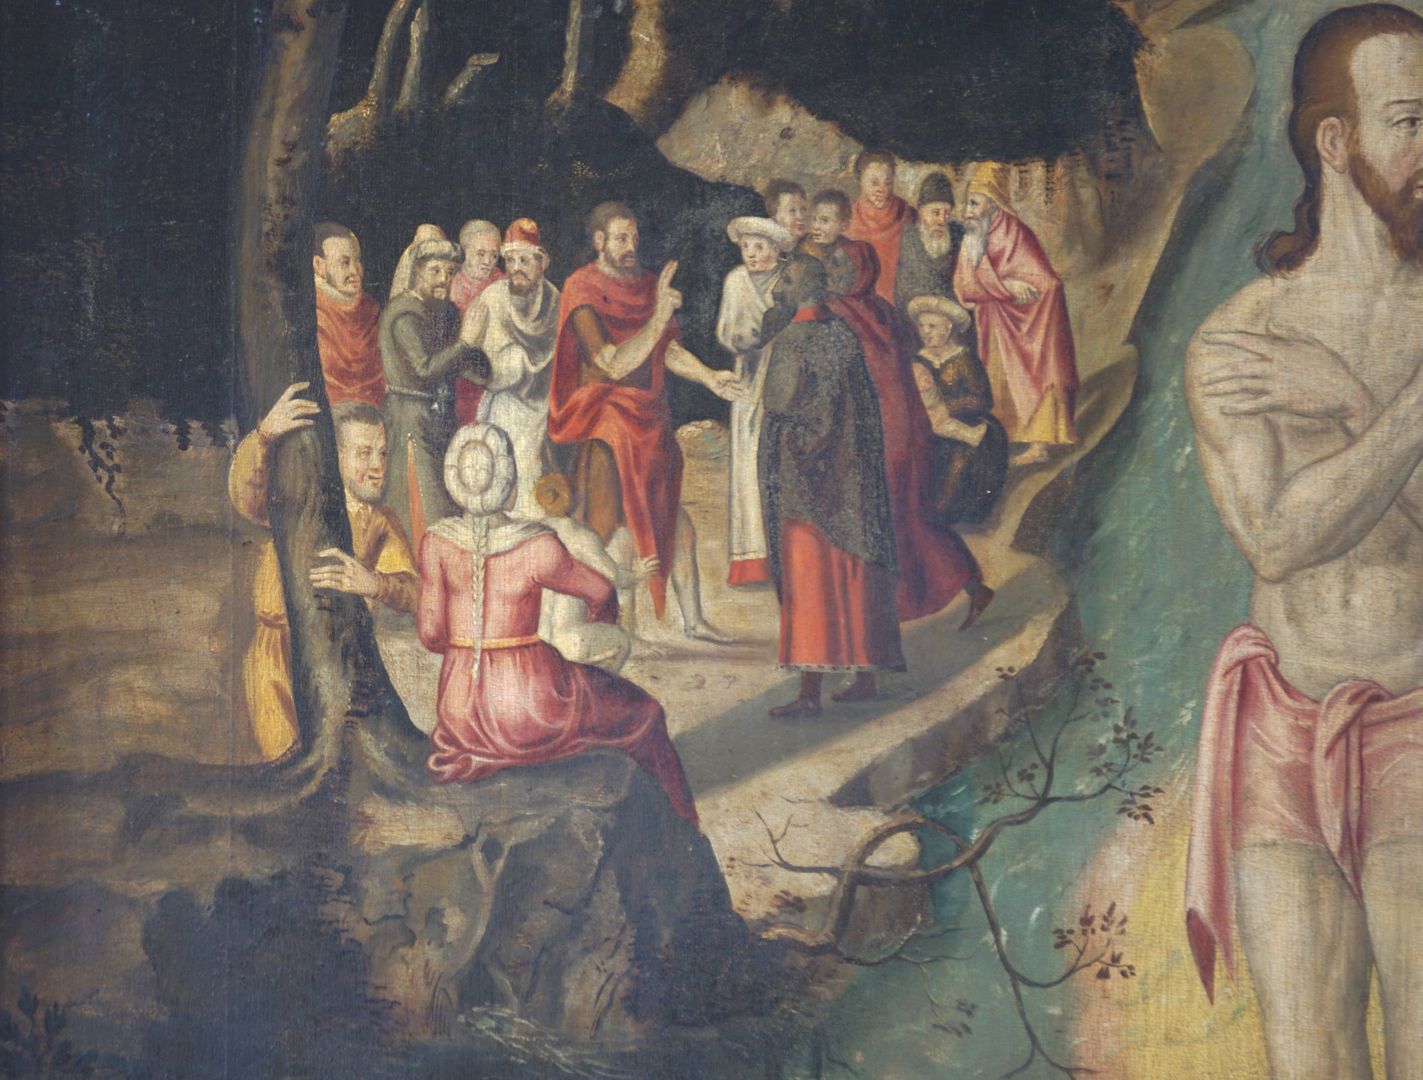 Epitaph Oertel Szene, wo Johannes predigt, seine rechte Hand im Sprech- oder Segensgestus.